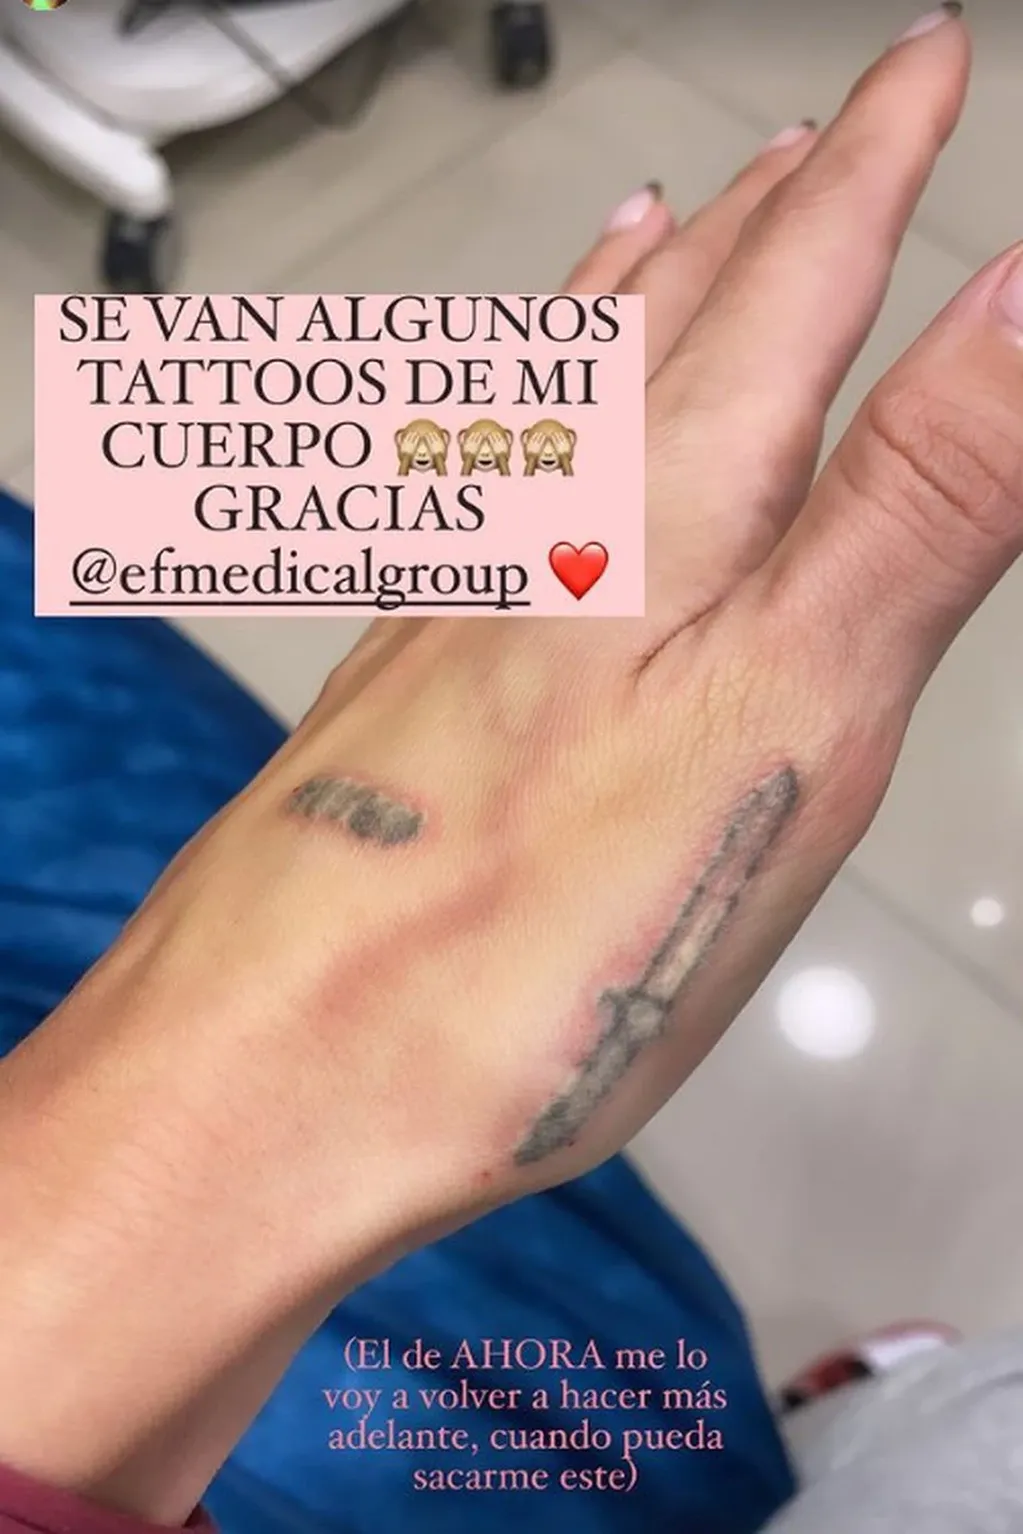 La hija de Marcelo Tinelli adelantó que se sometió a un tratamiento láser para borrarse los tatuajes